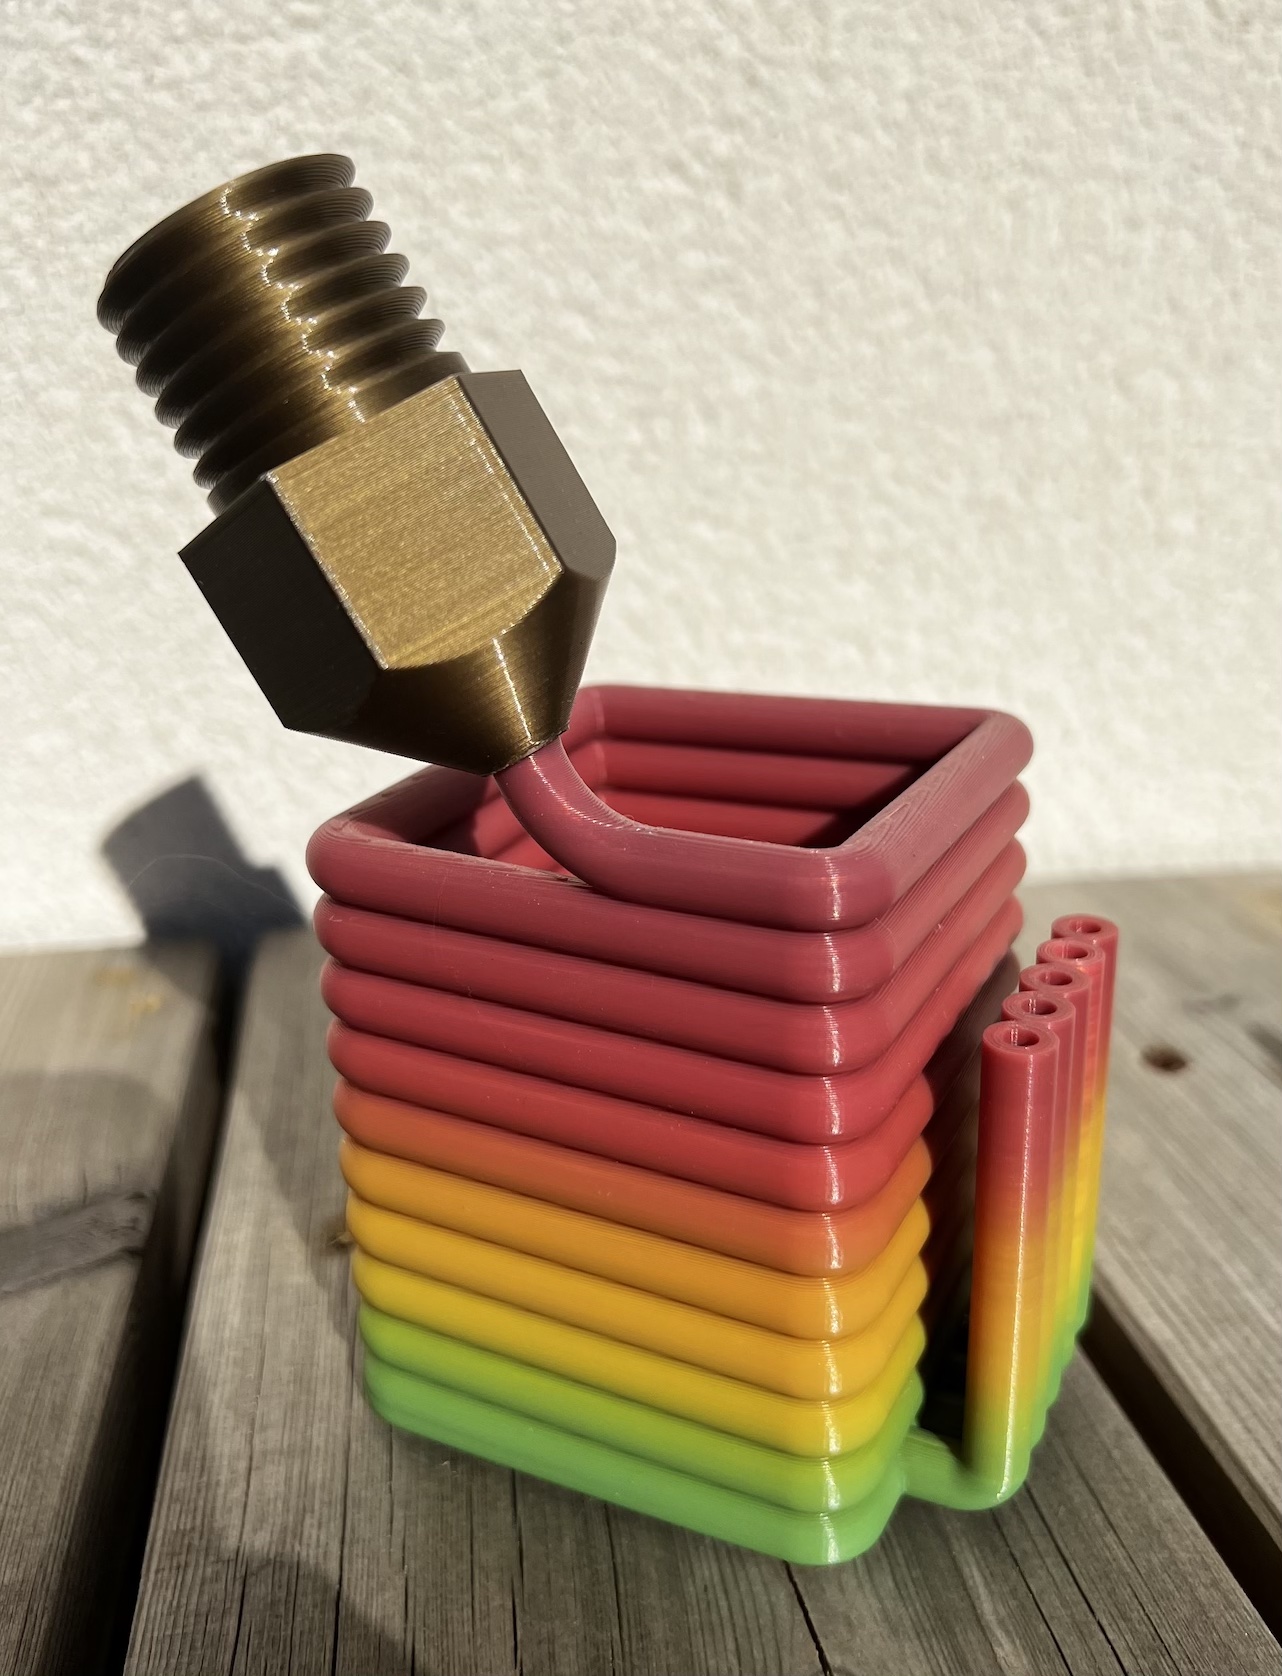 Pencil cup 3D printer